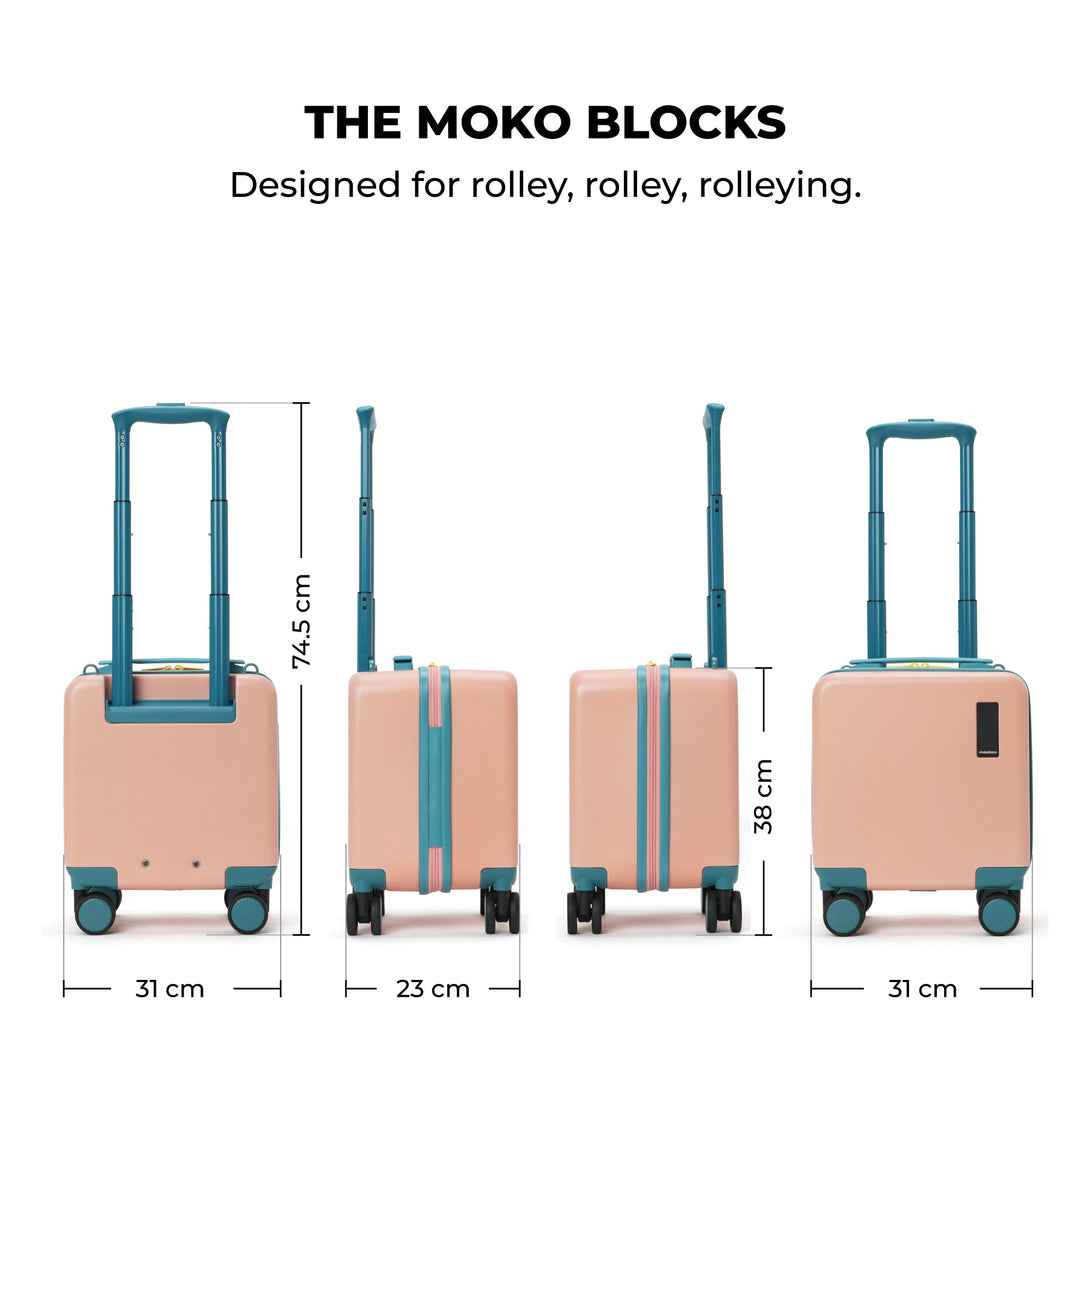 The Moko Blocks